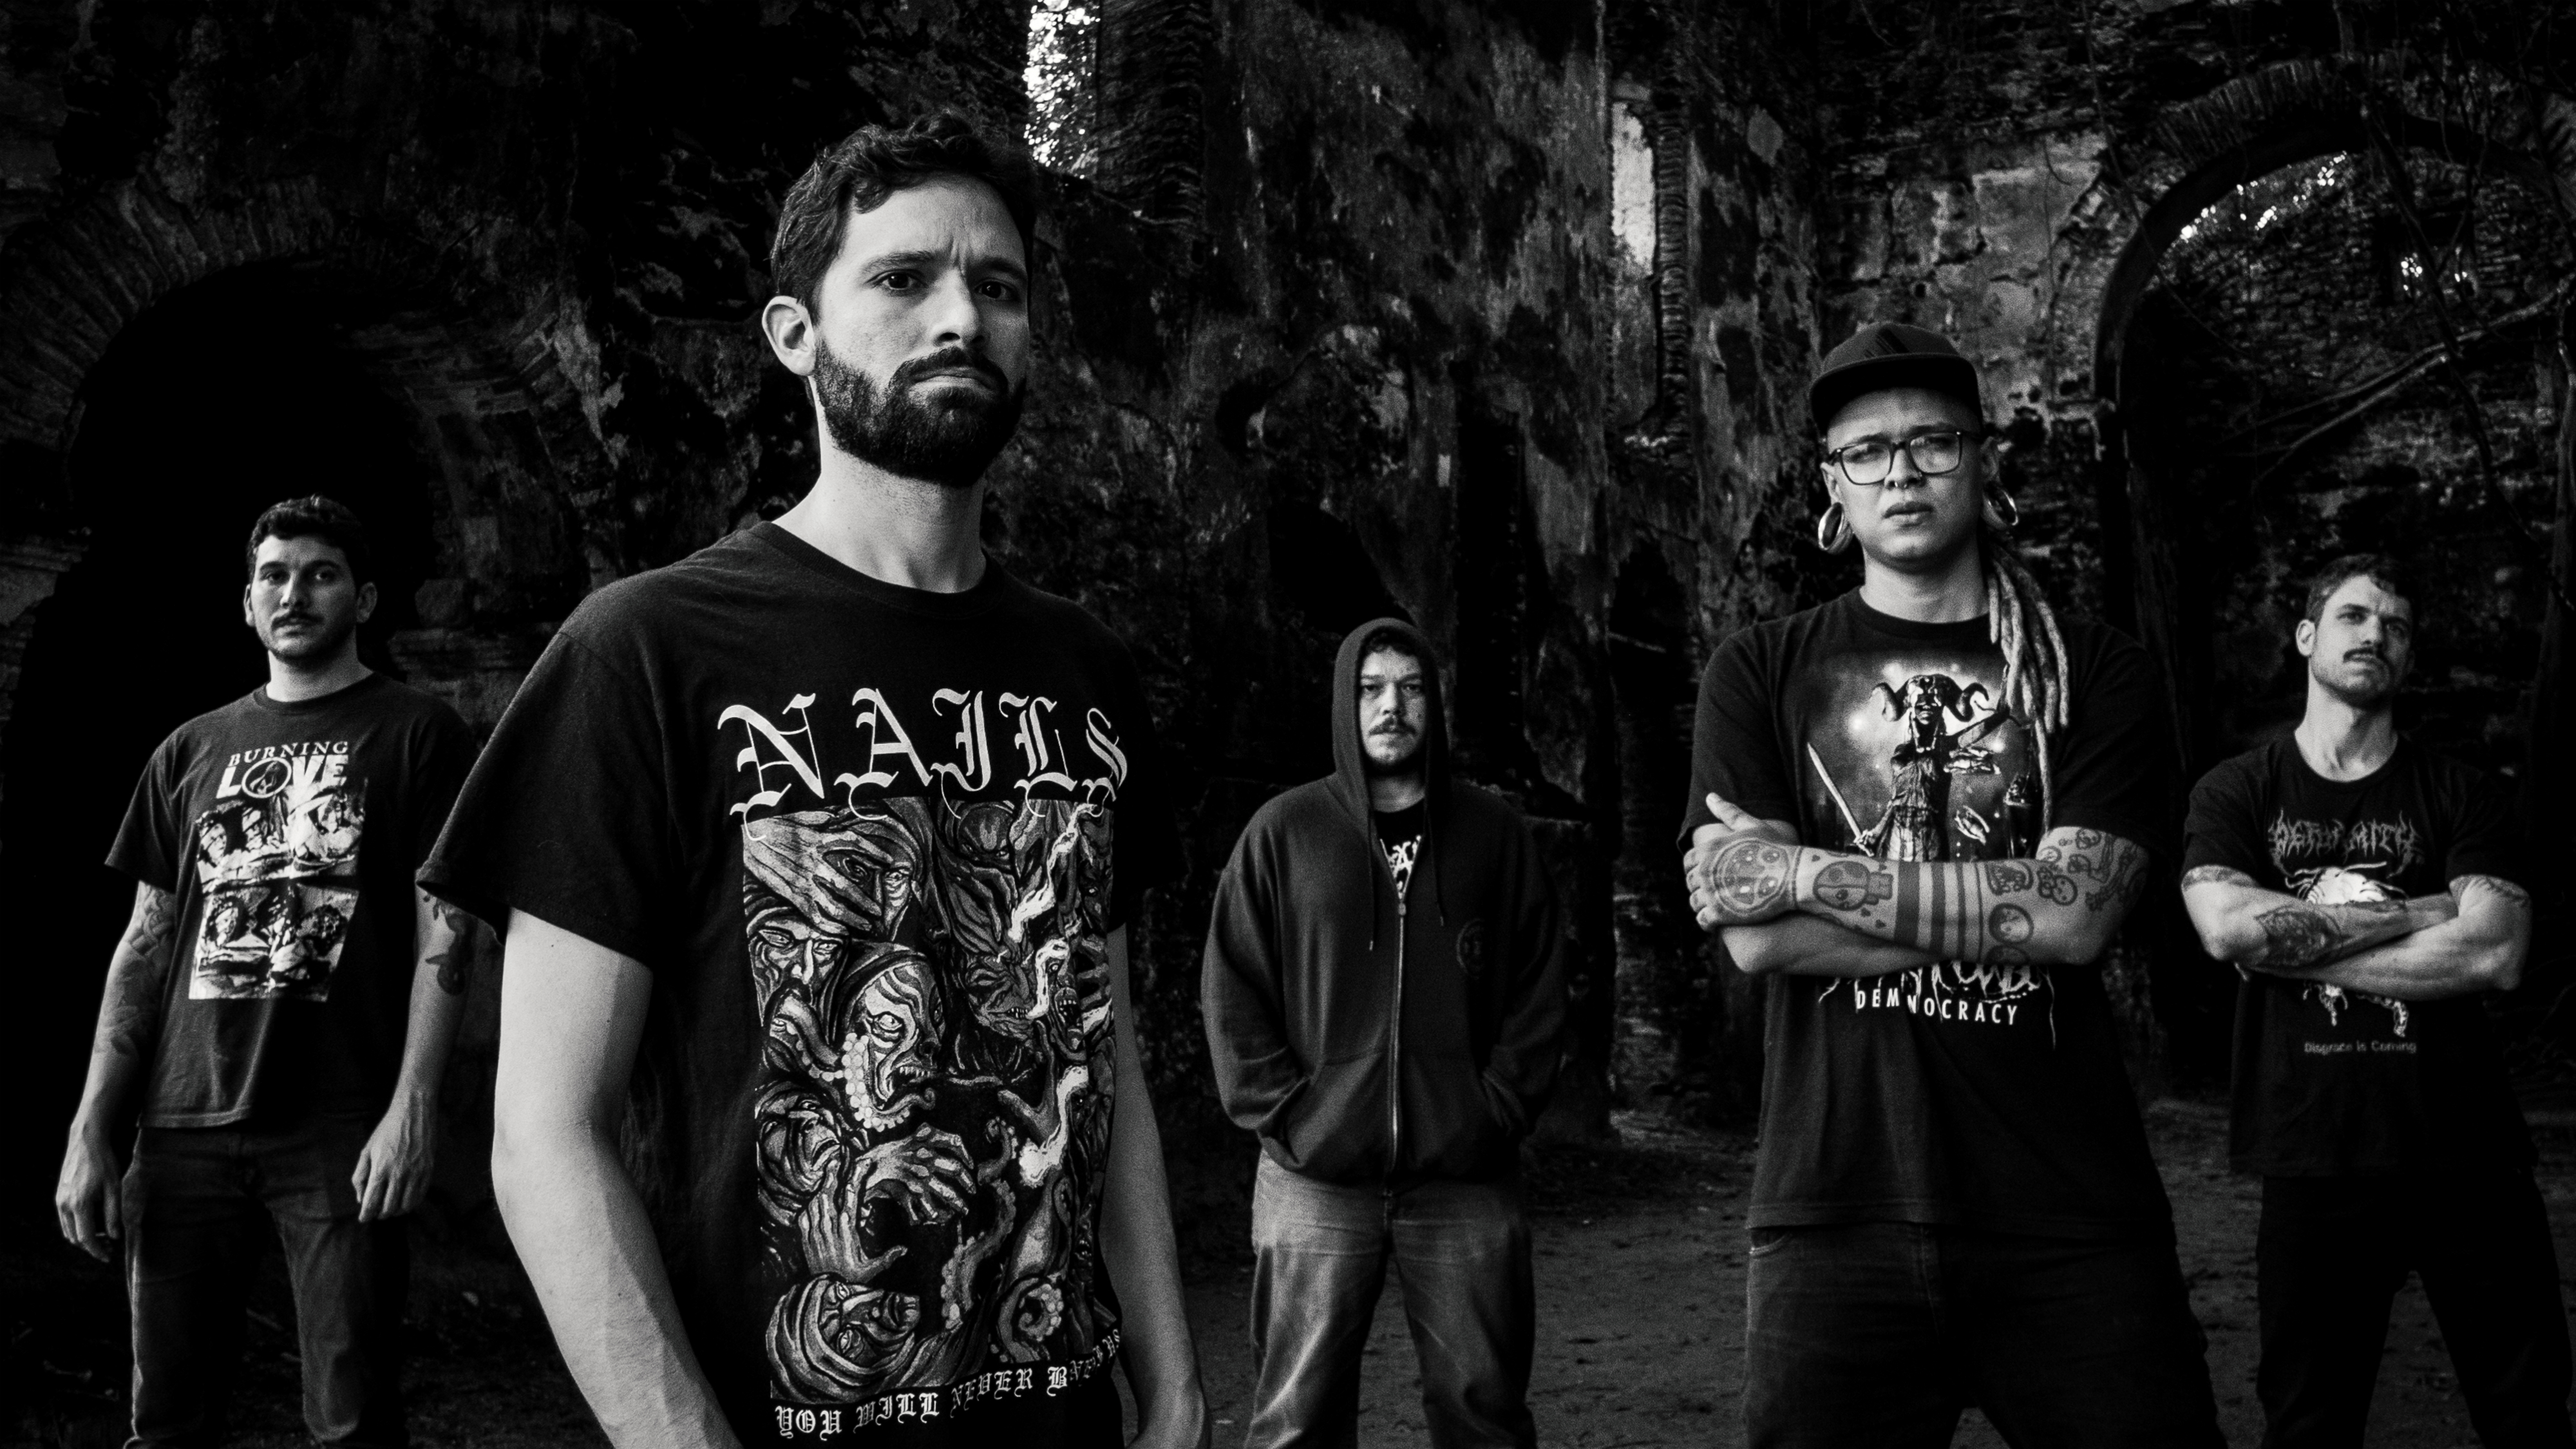 Conheça a Aphorism, banda de metal extremo de Salvador, Bahia